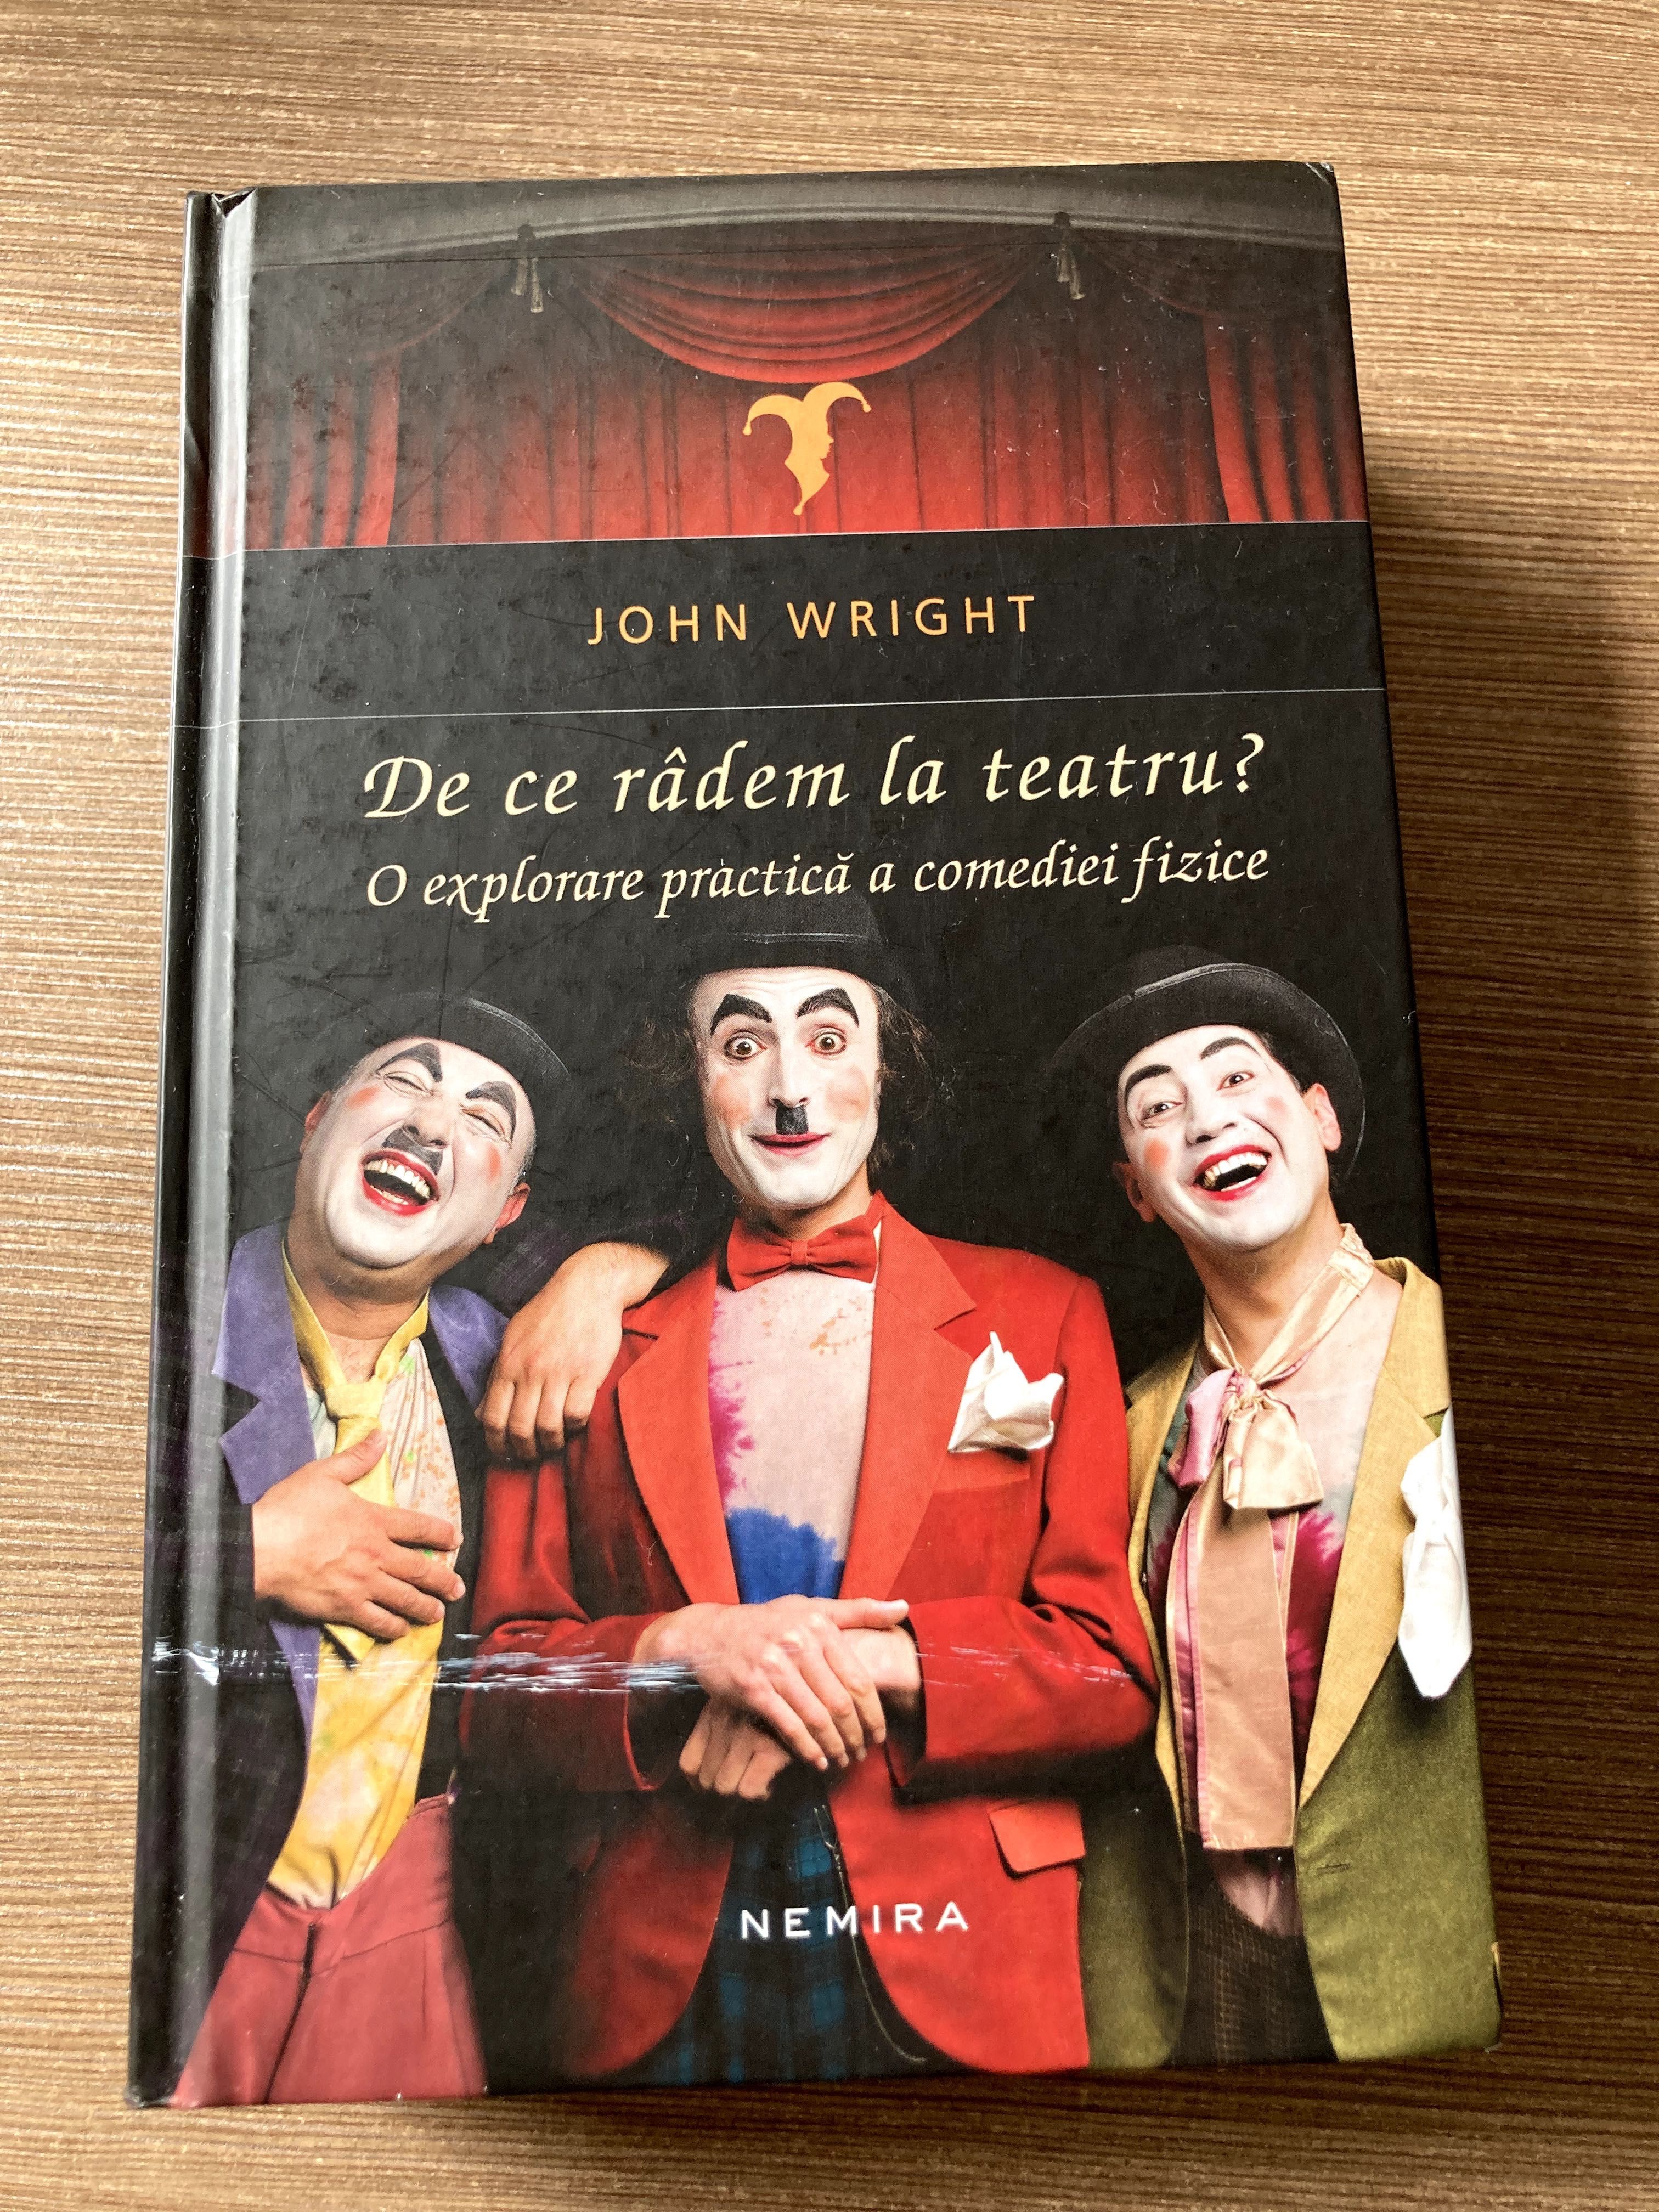 De ce râdem la teatru? de John Wright Editura Nemira